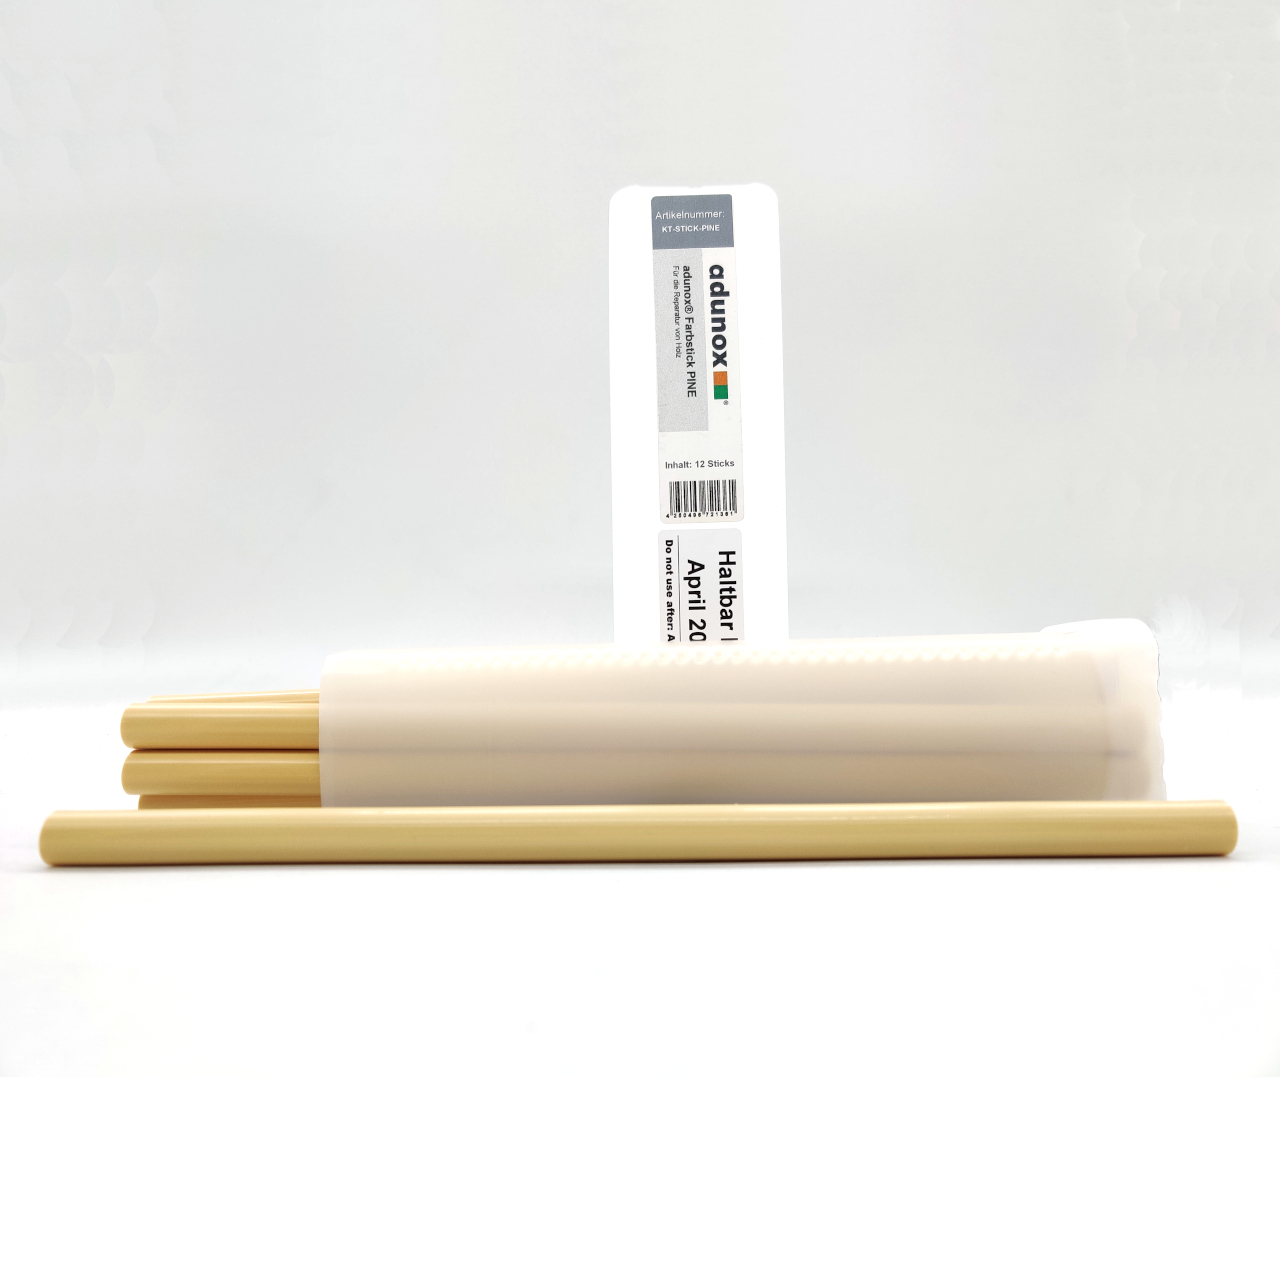 adunox® Farbsticks für die Reparatur von Holz | PINE | 12 Sticks